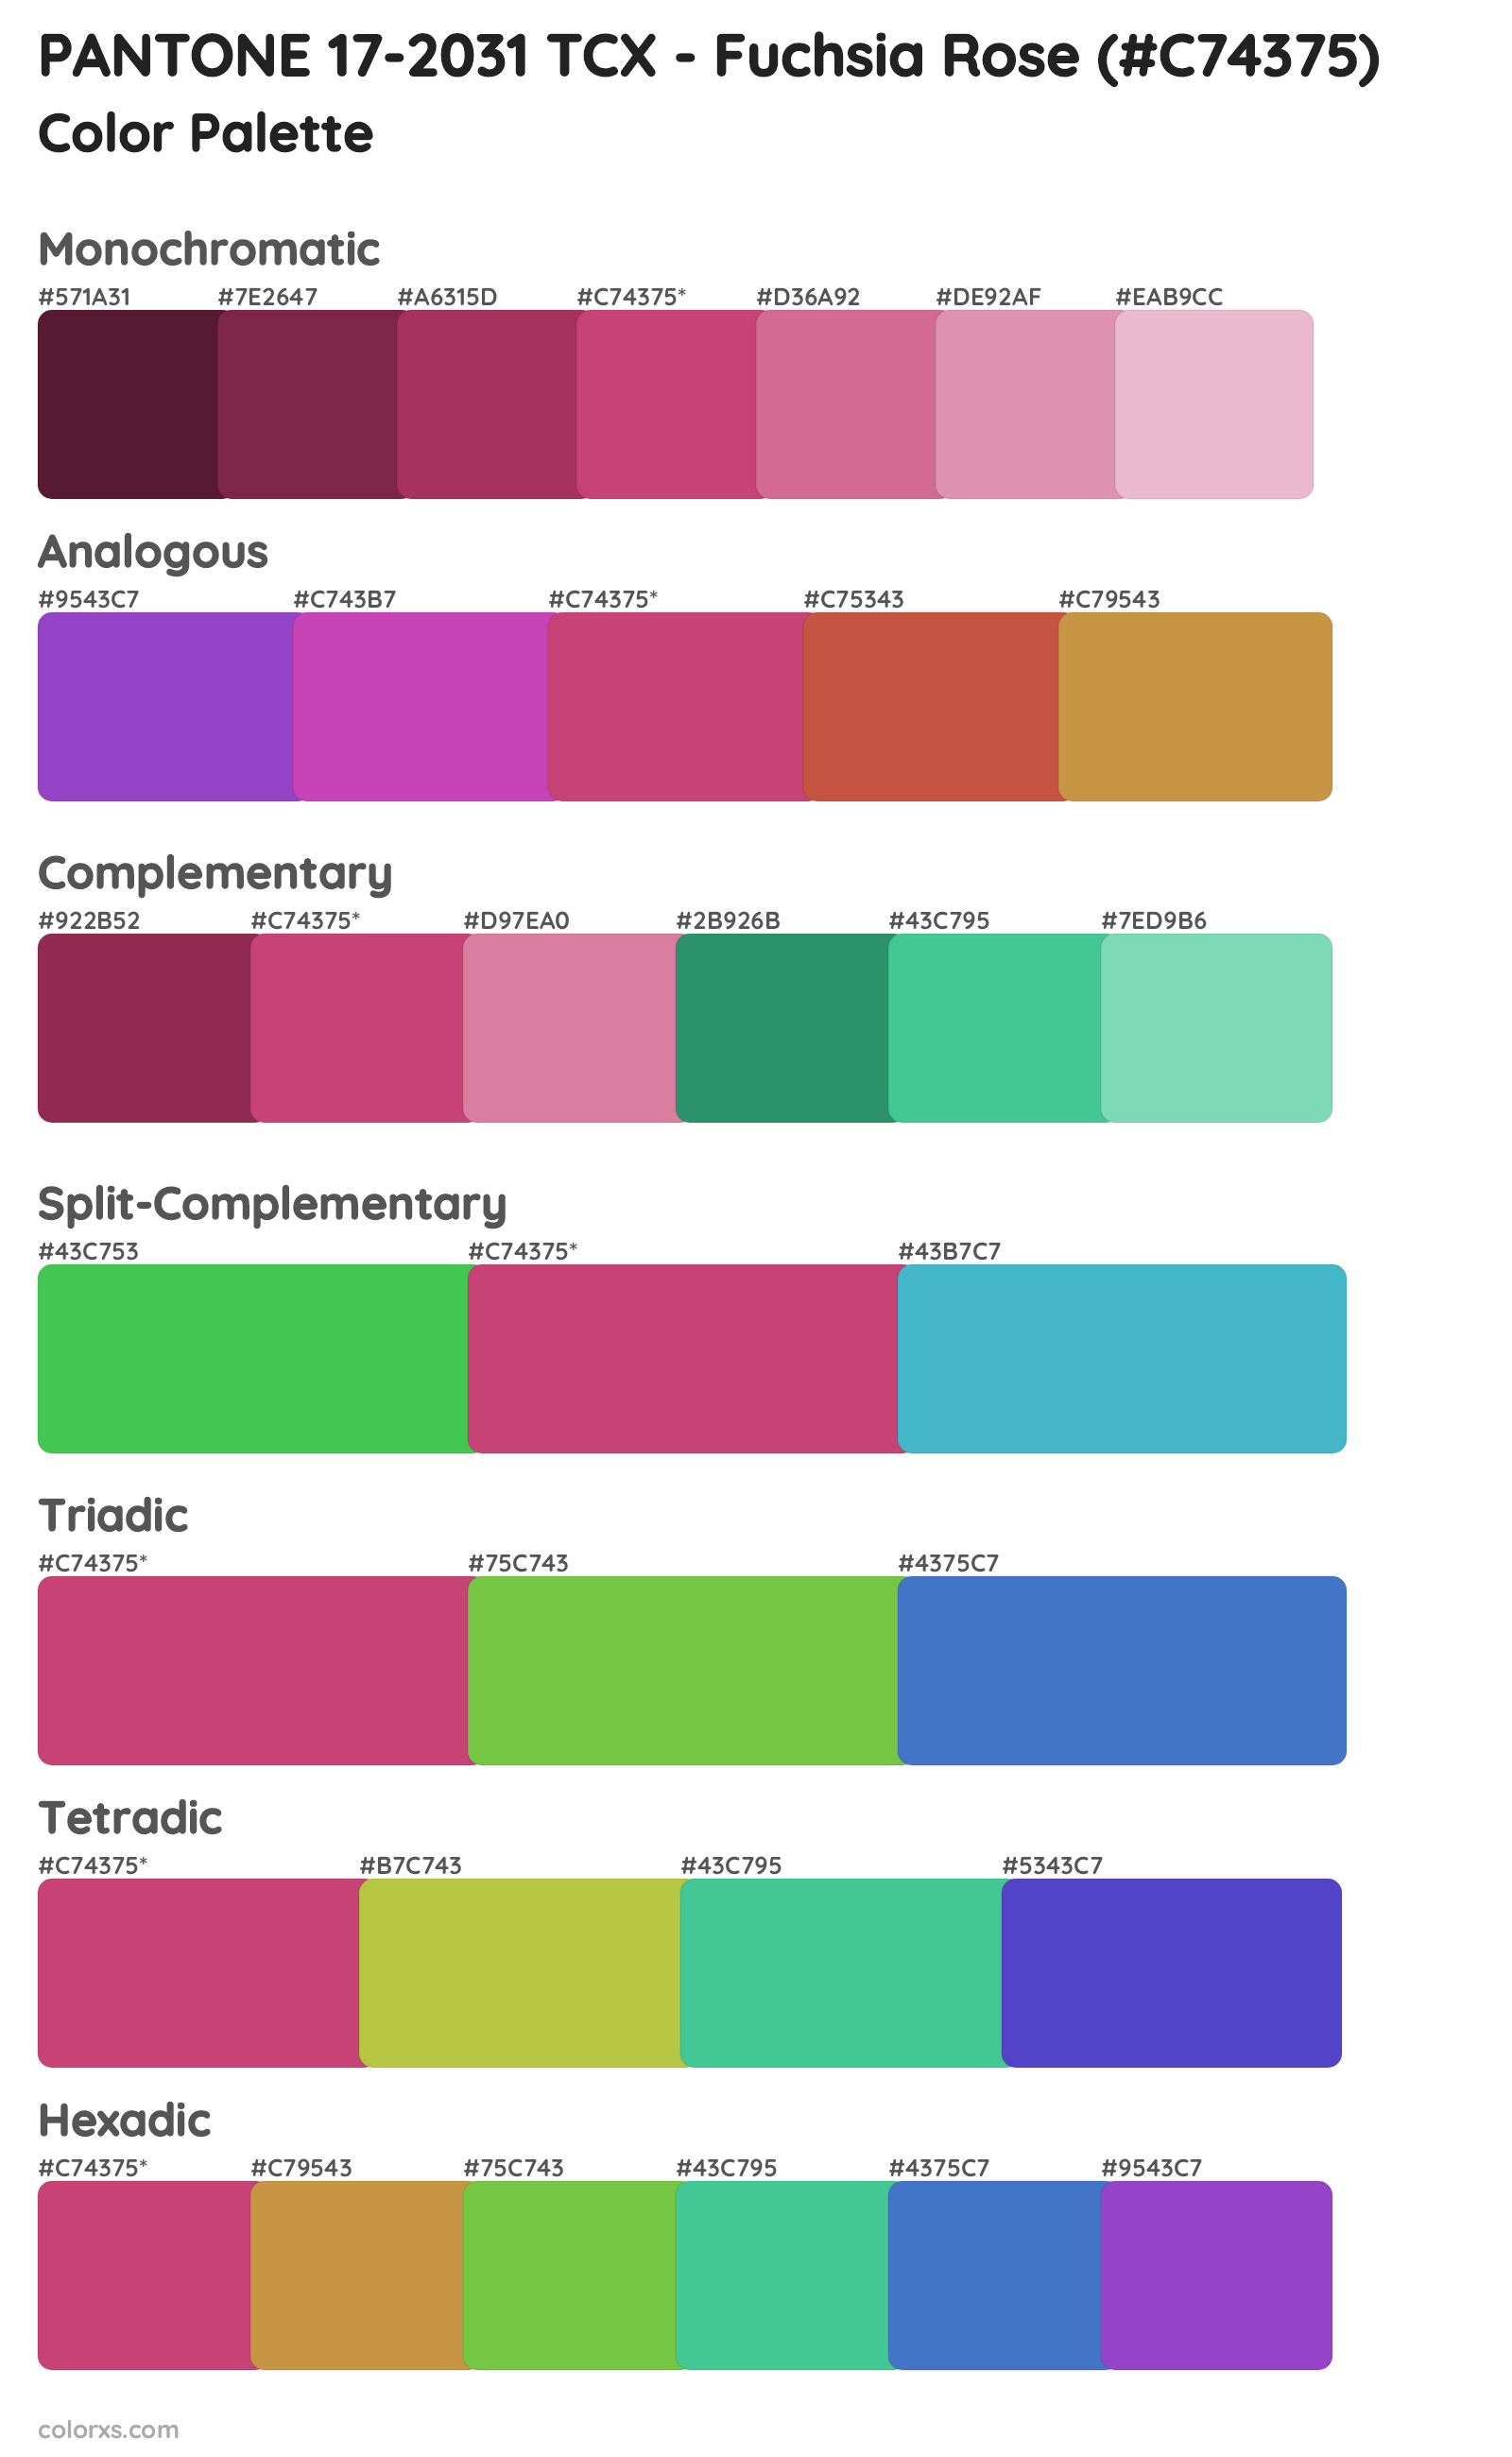 PANTONE 17-2031 TCX - Fuchsia Rose Color Scheme Palettes